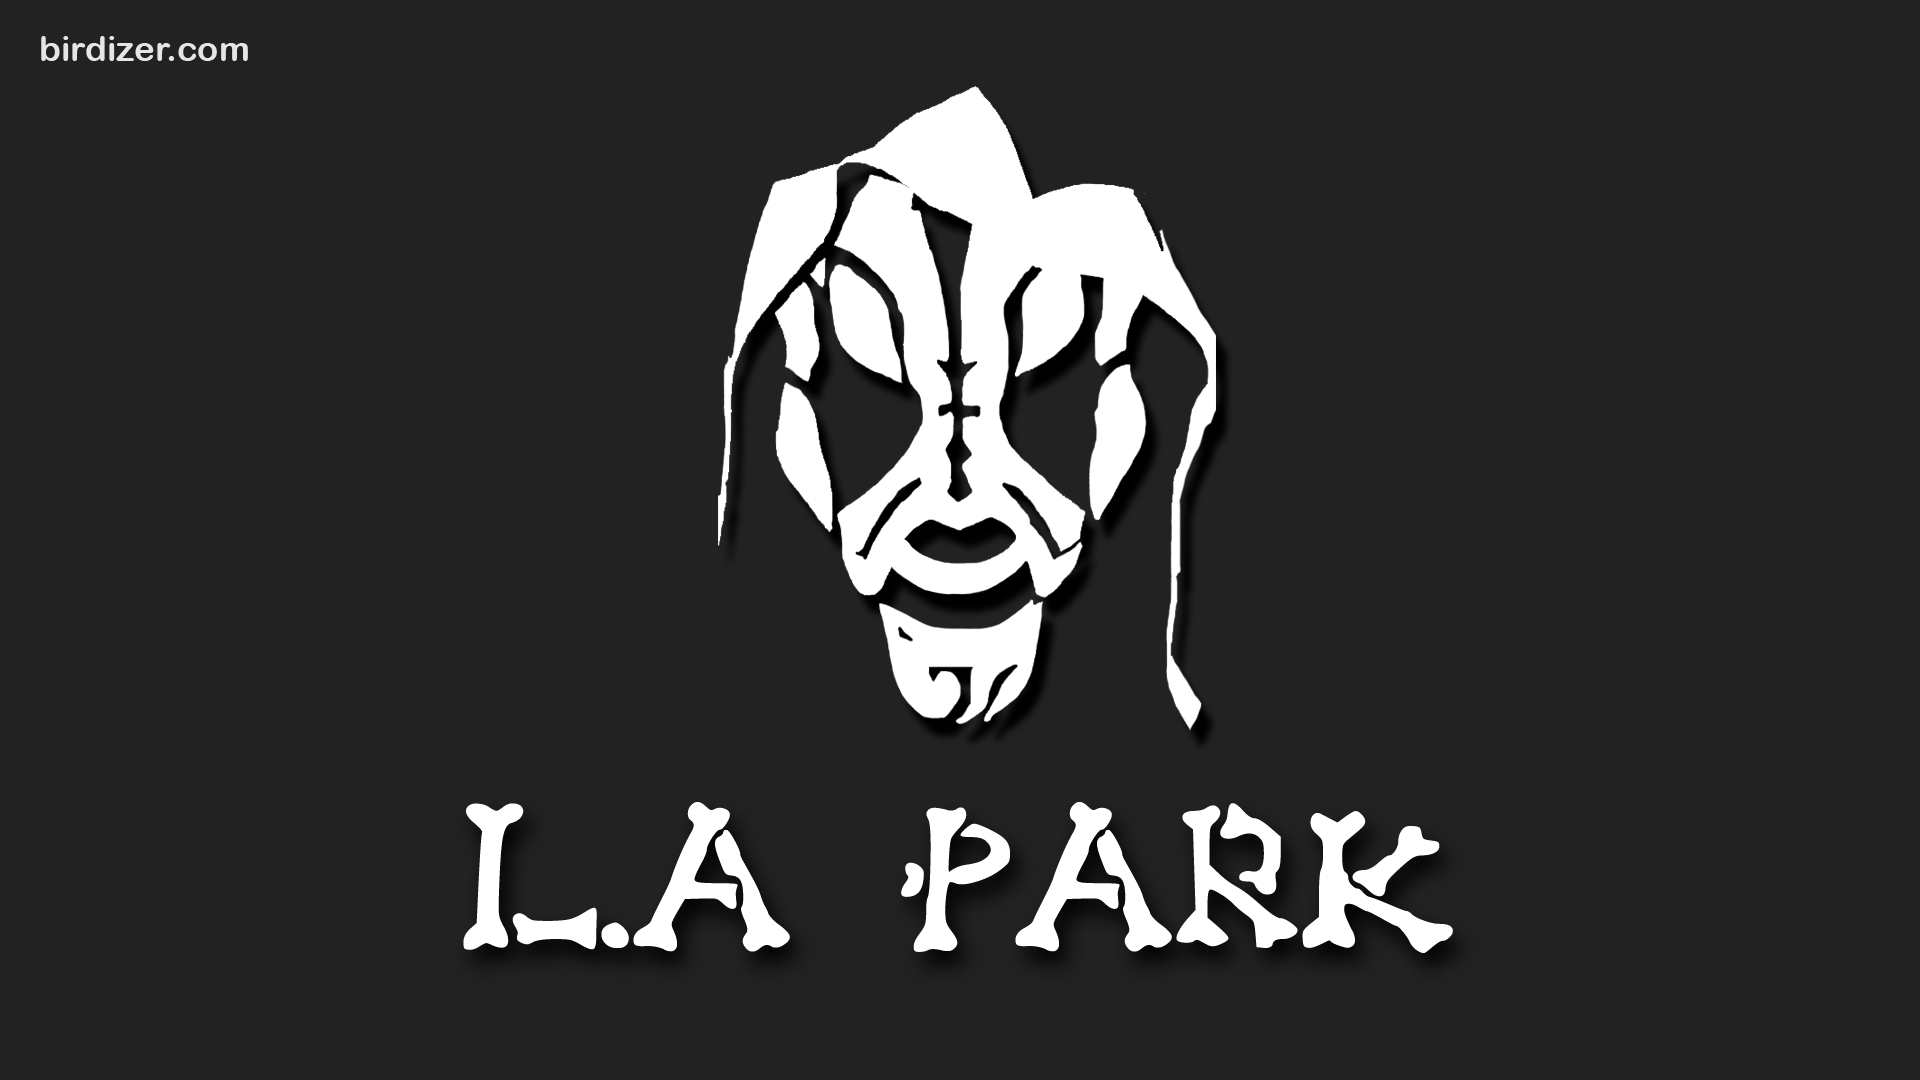 L A Park M Scara Wallpaper Imagenes De Lucha Libre